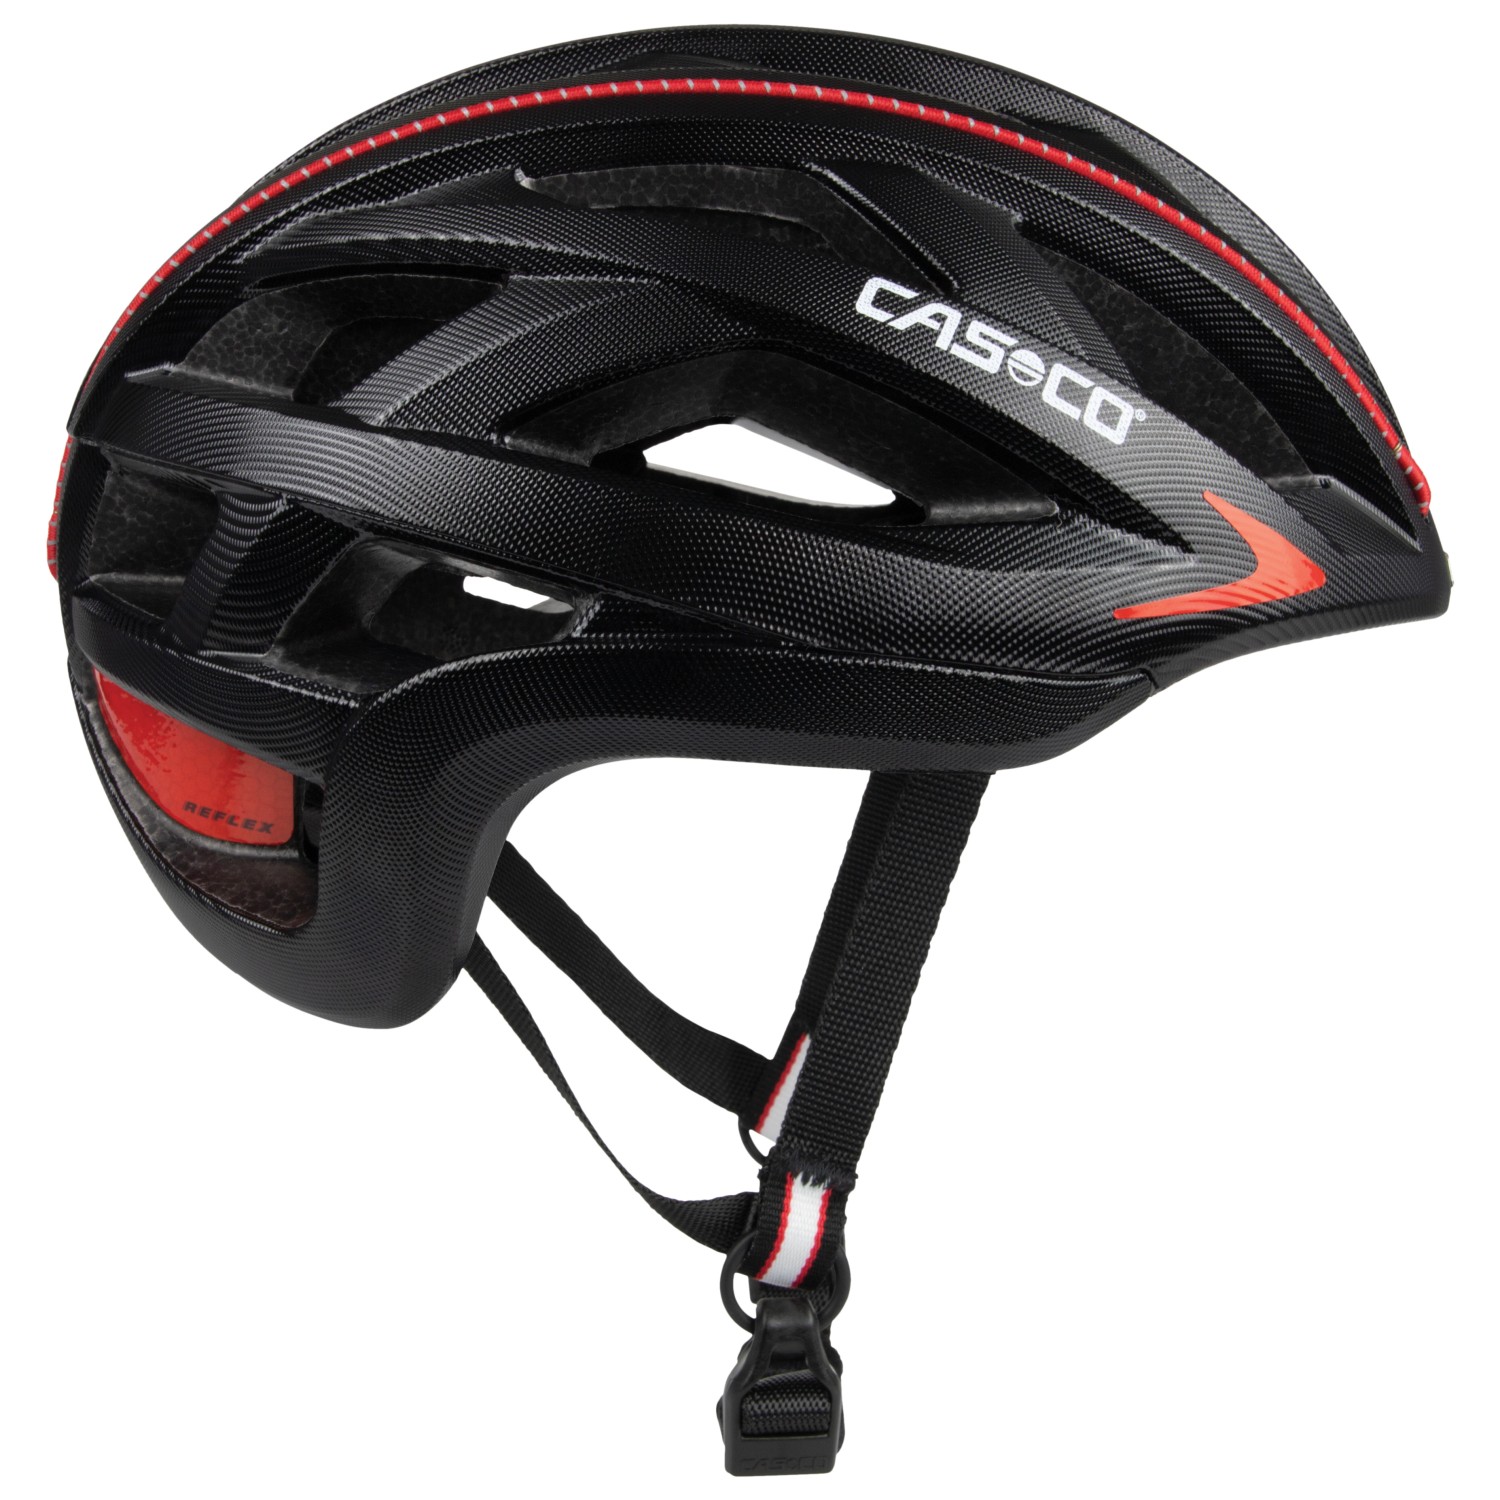 Велосипедный шлем Casco Cuda 2 Strada, цвет Black Structured